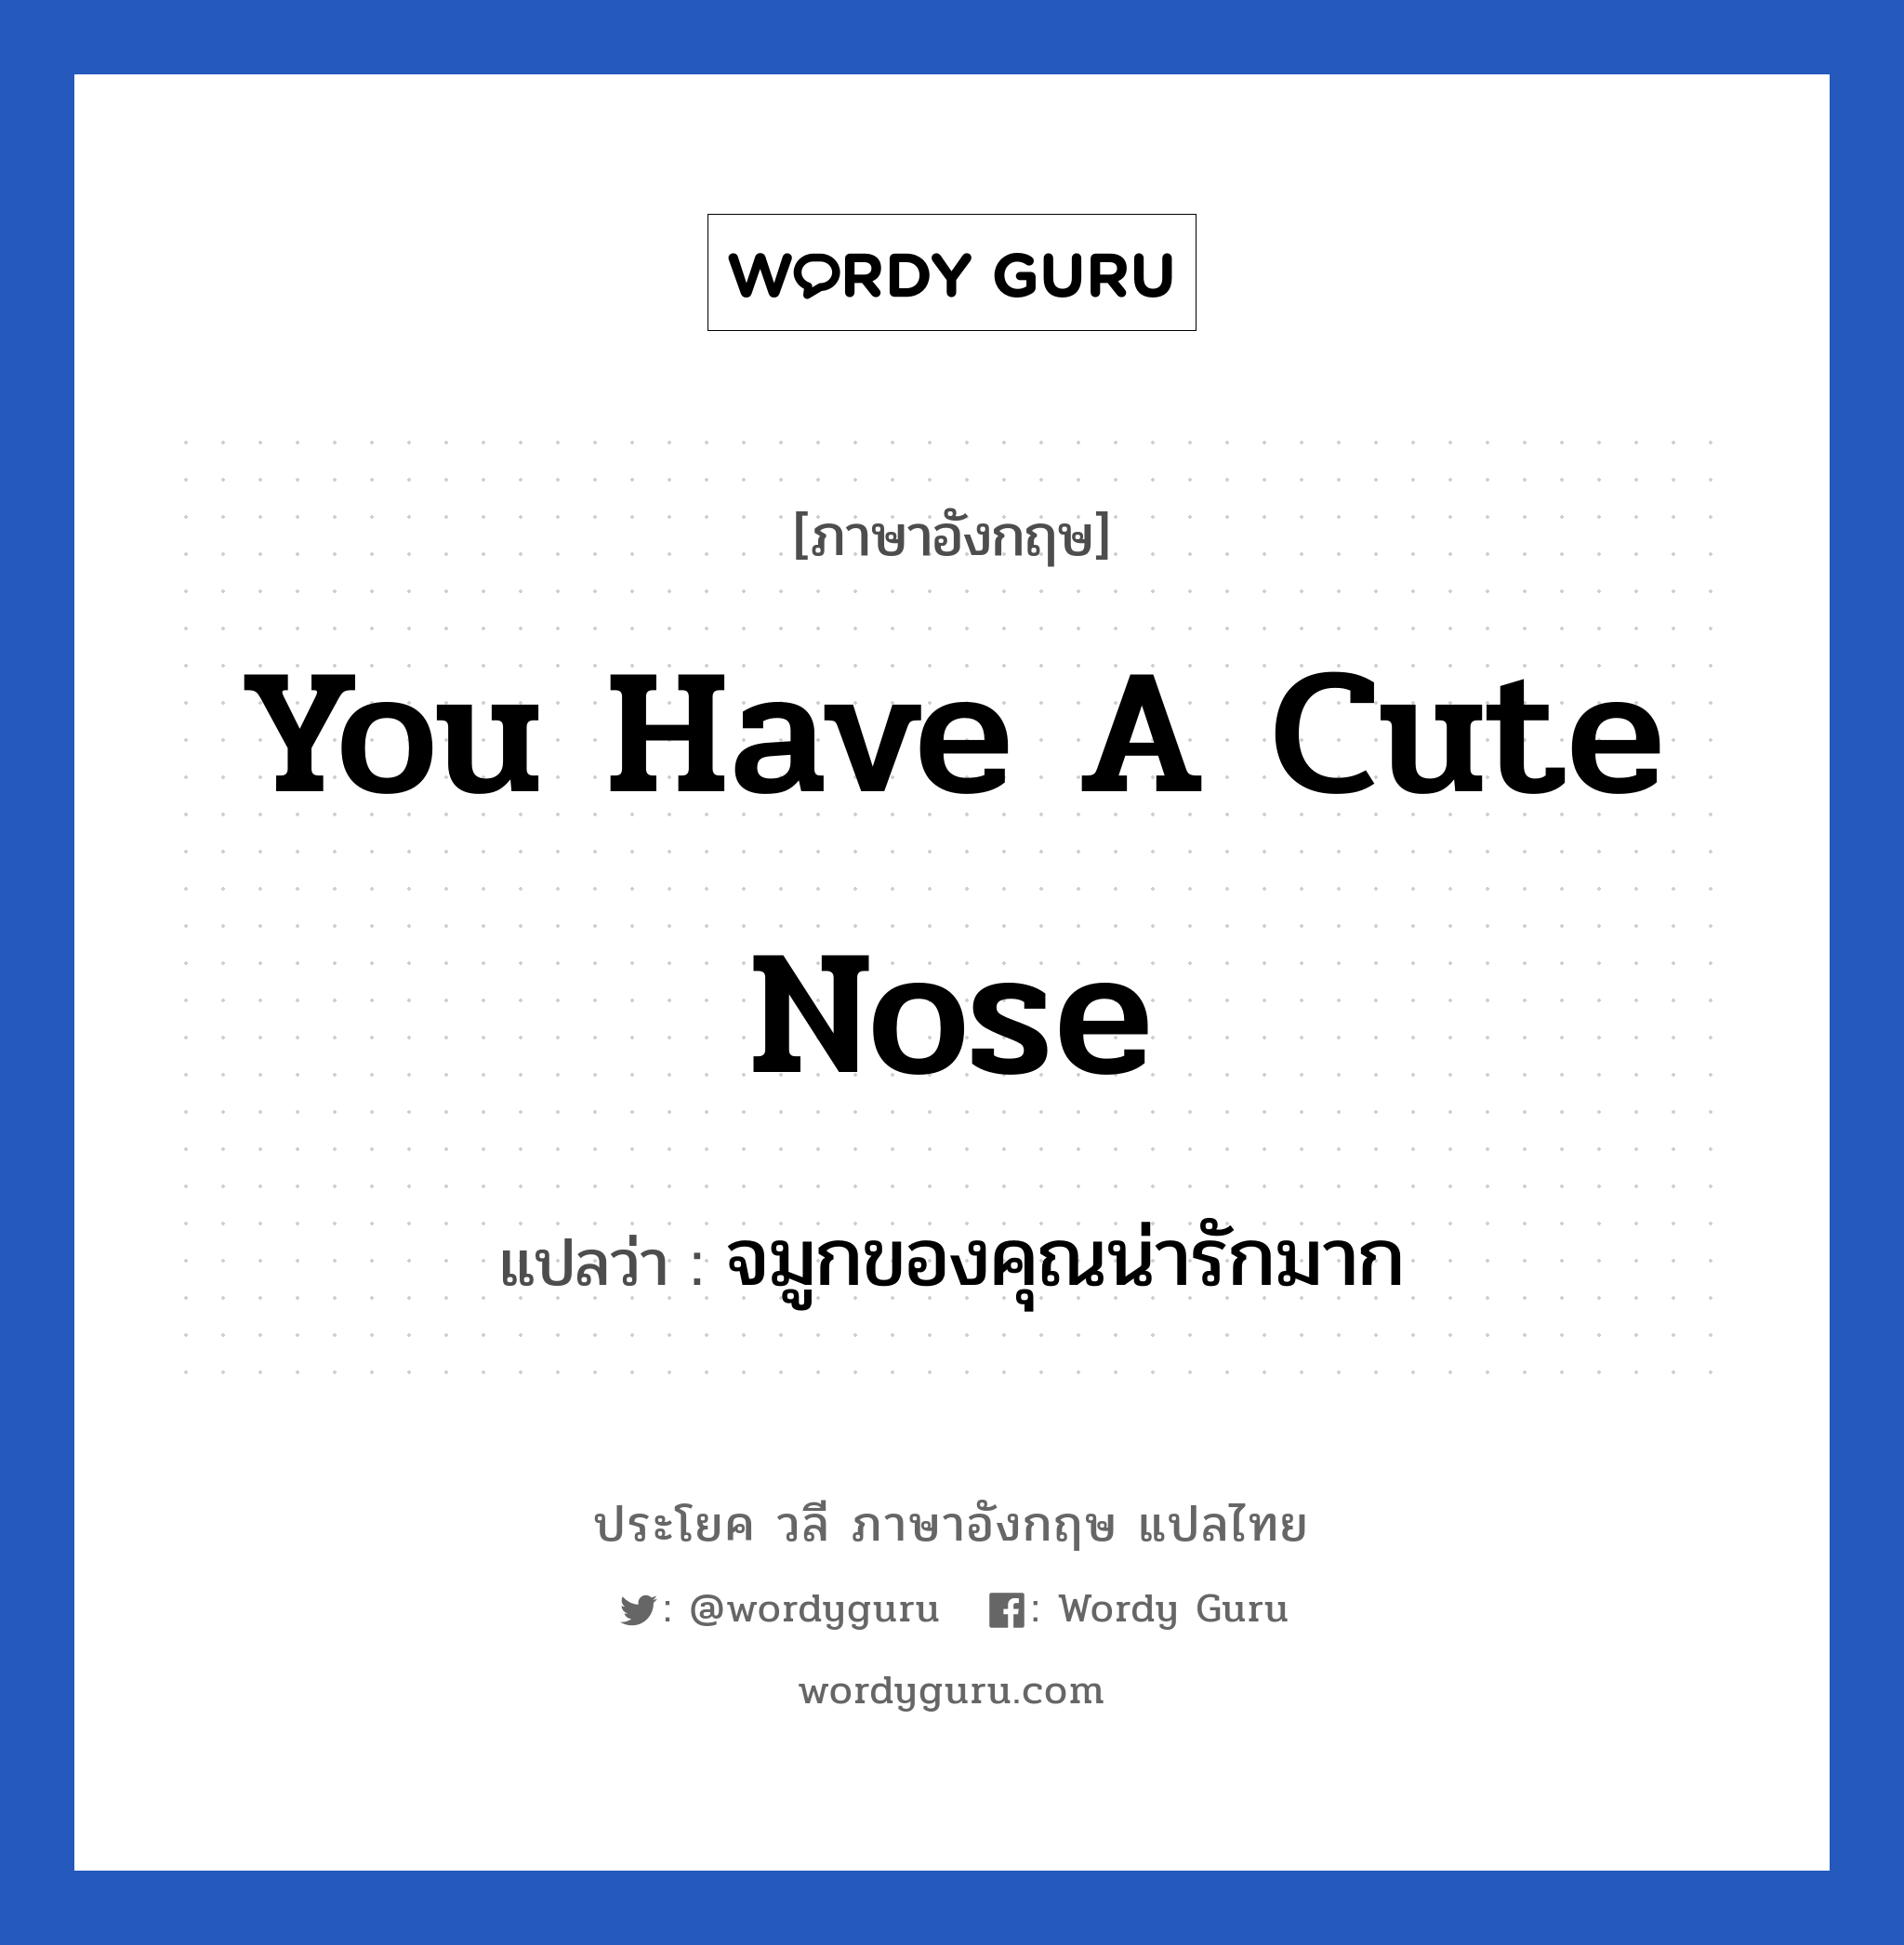 จมูกของคุณน่ารักมาก ภาษาอังกฤษ?, วลีภาษาอังกฤษ จมูกของคุณน่ารักมาก แปลว่า You have a cute nose หมวด คำชมเชย